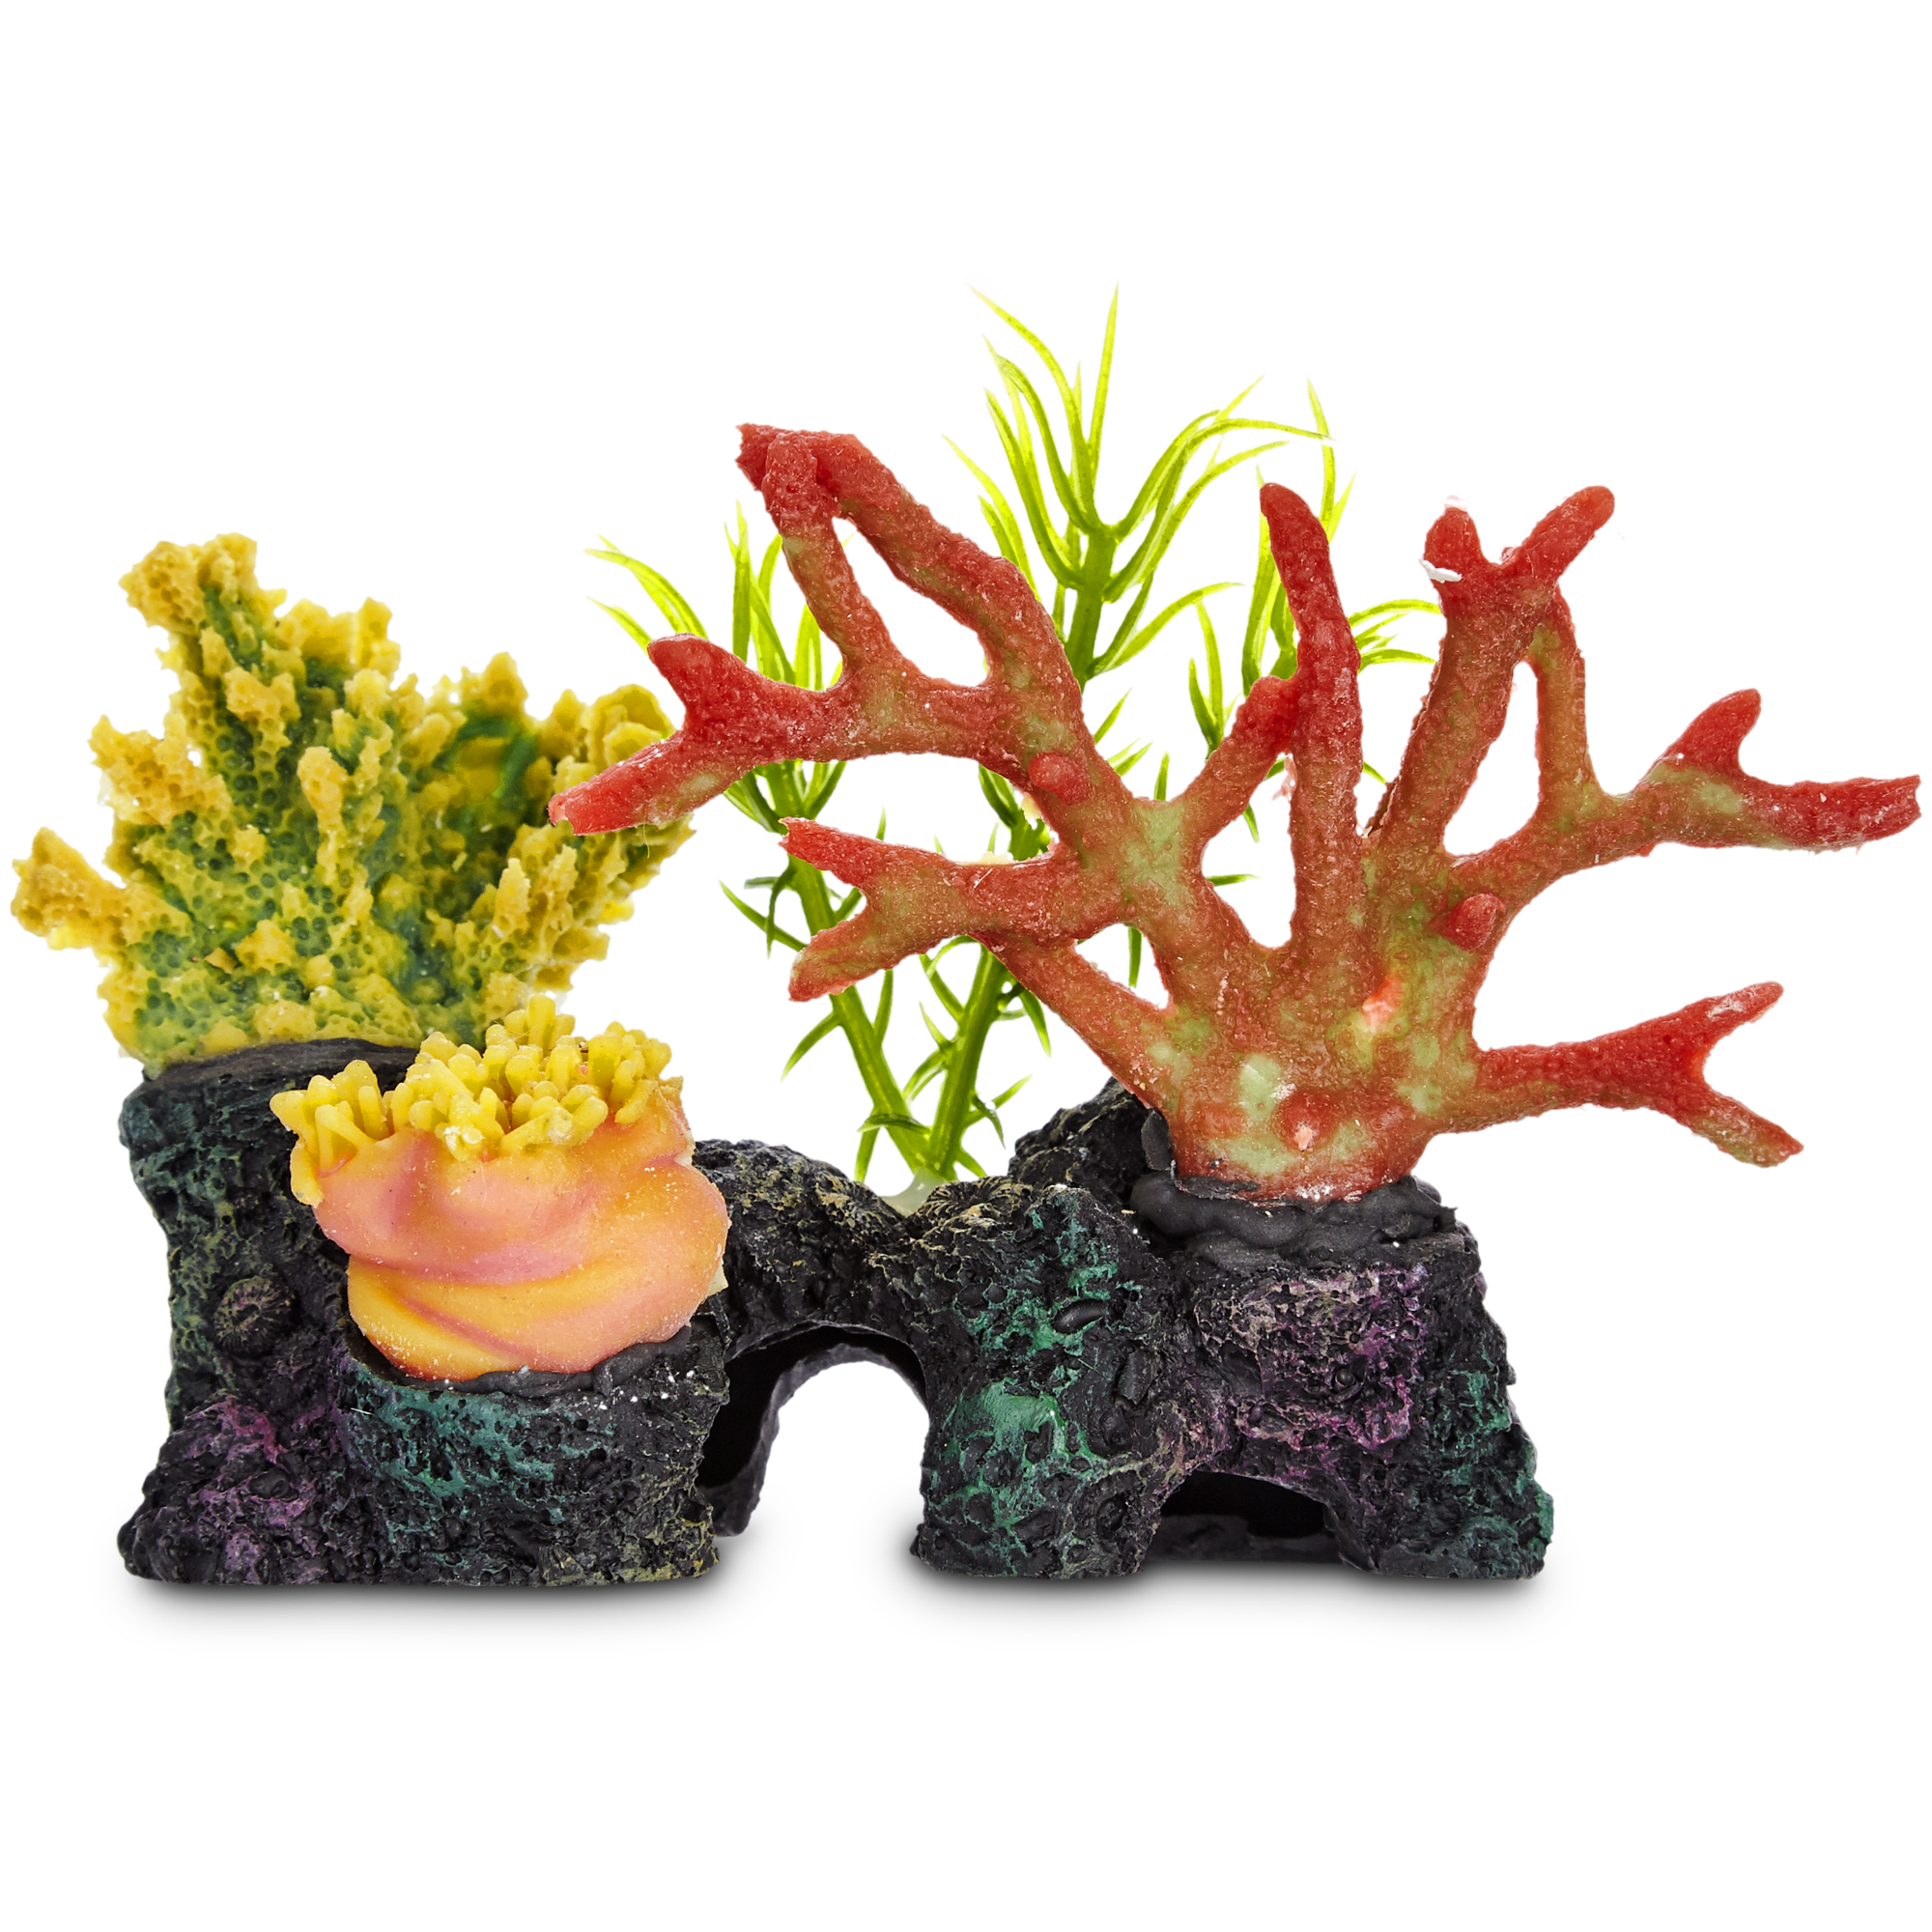 Sea Coral Aquarium Ornaments / Yutiny Artificial Coral Plastic Vivid ...